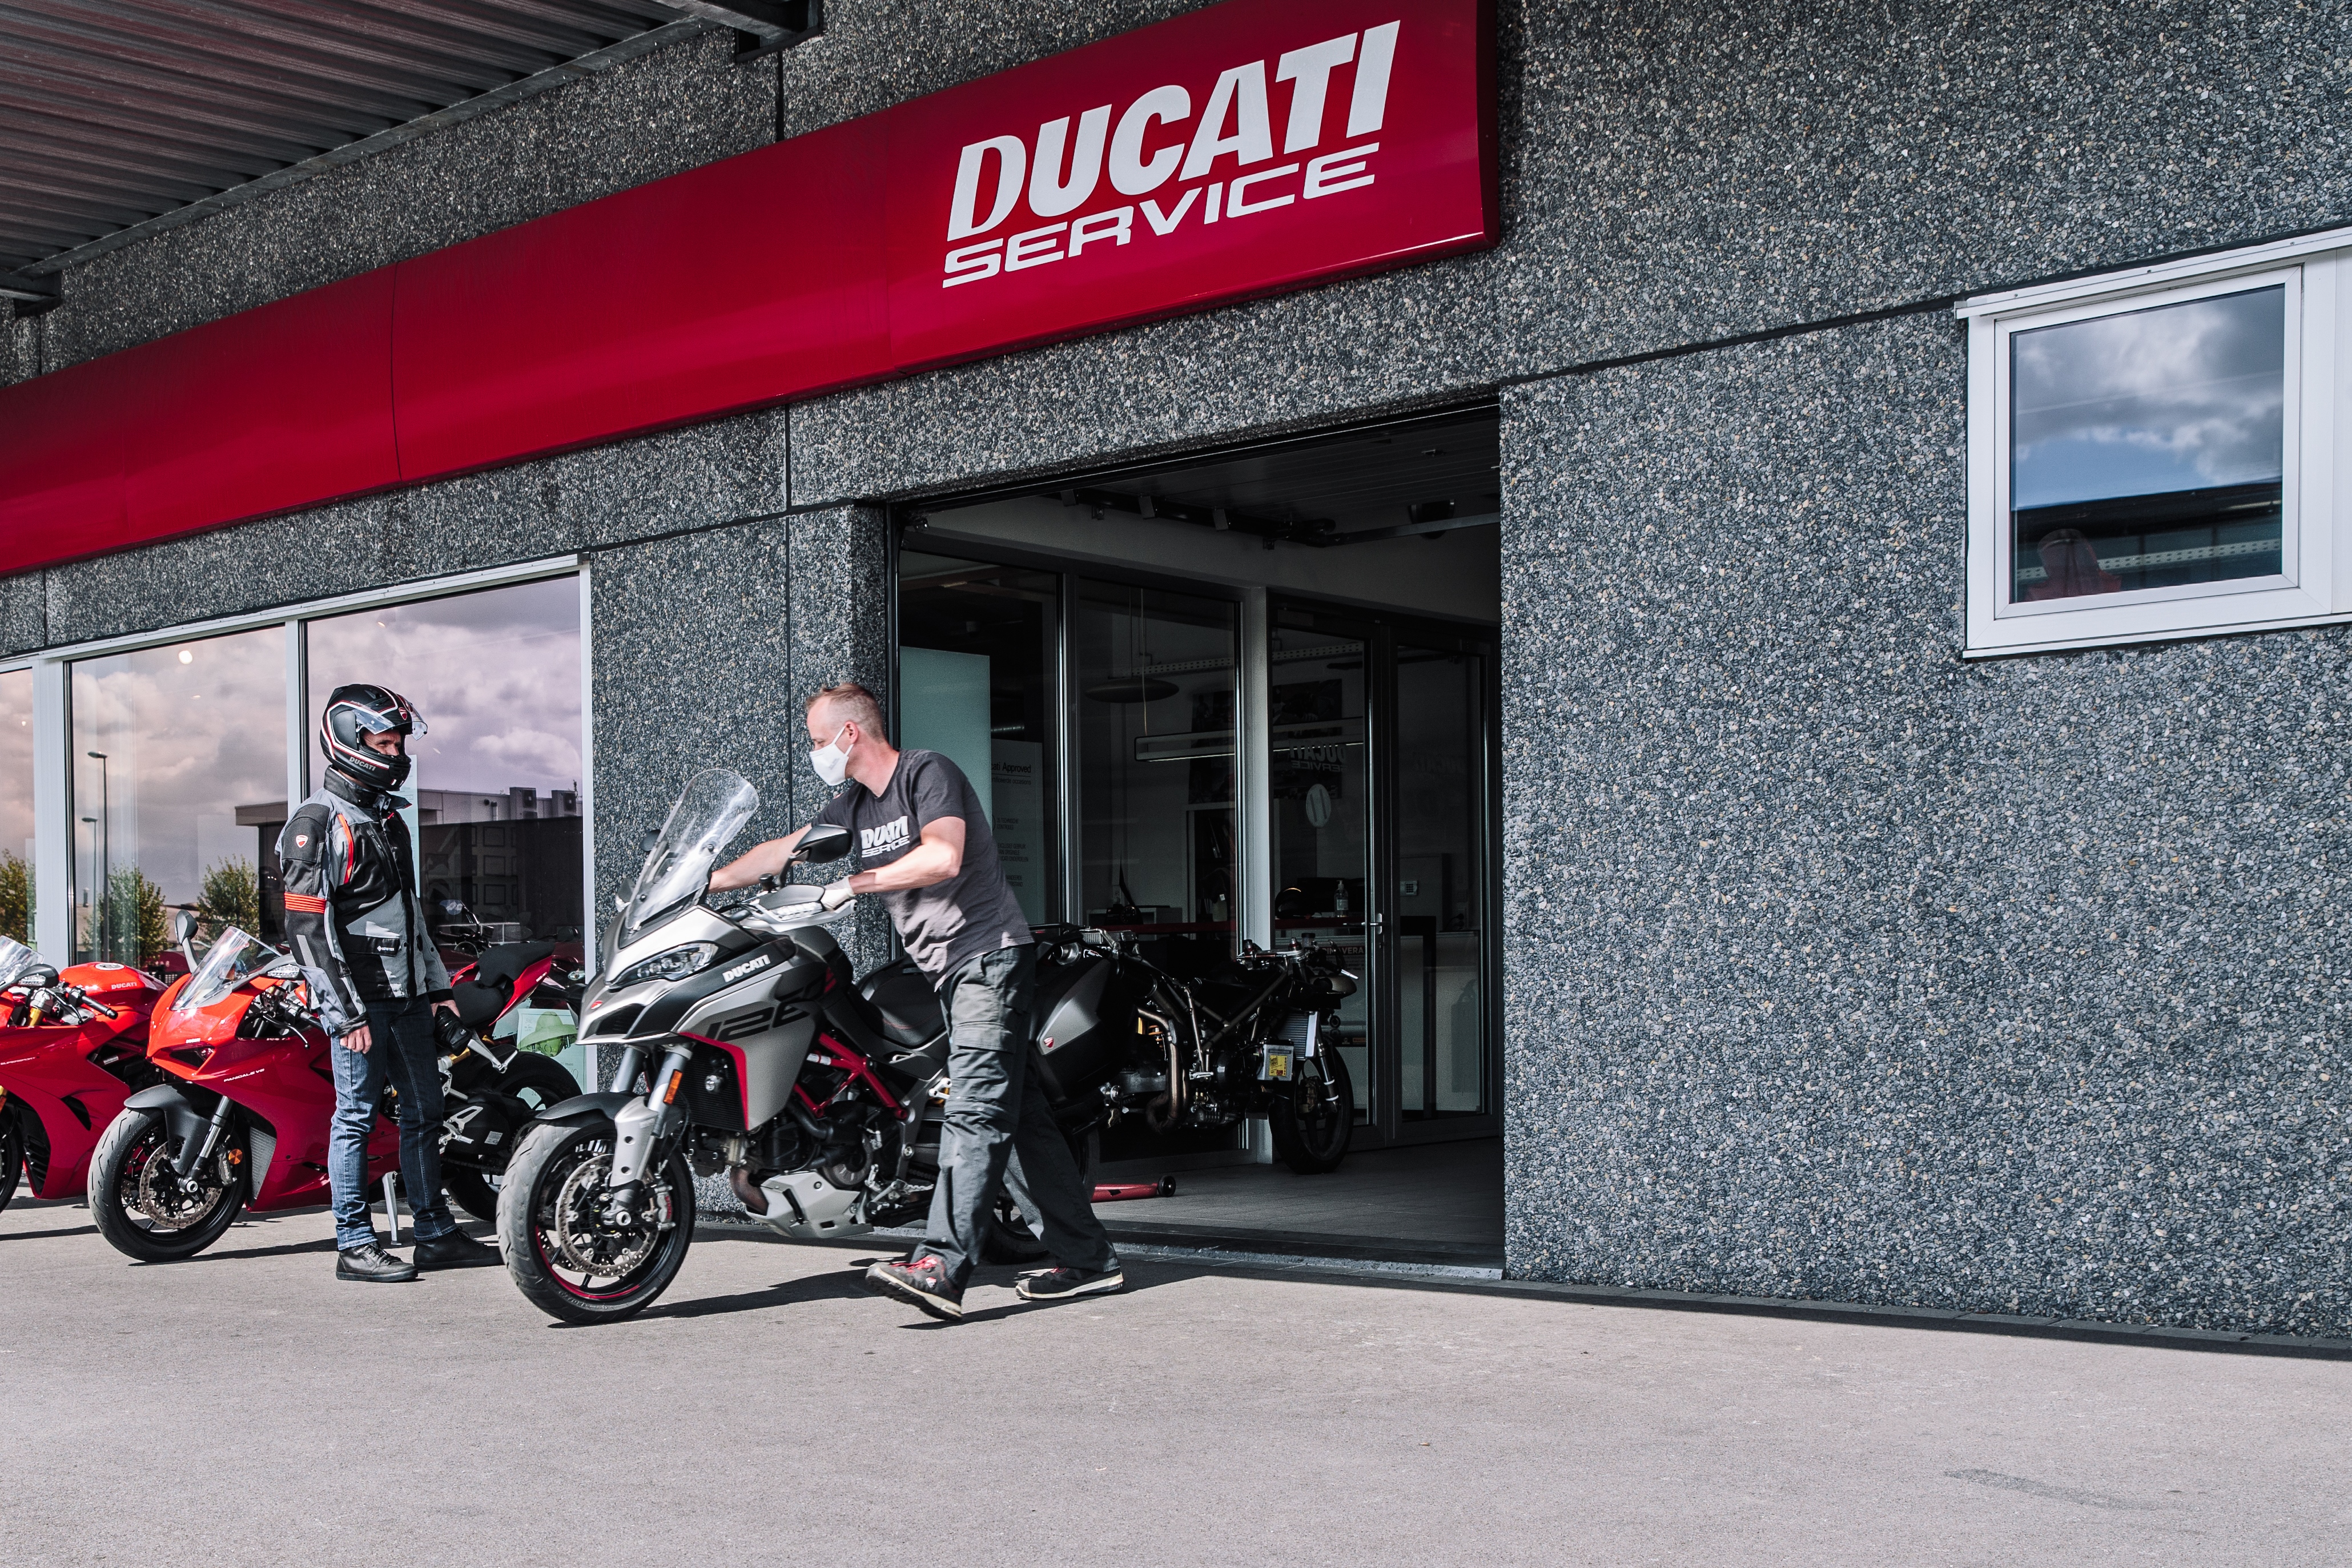 Ducati oferece prolongamento de garantia e atualizações gratuitas de software